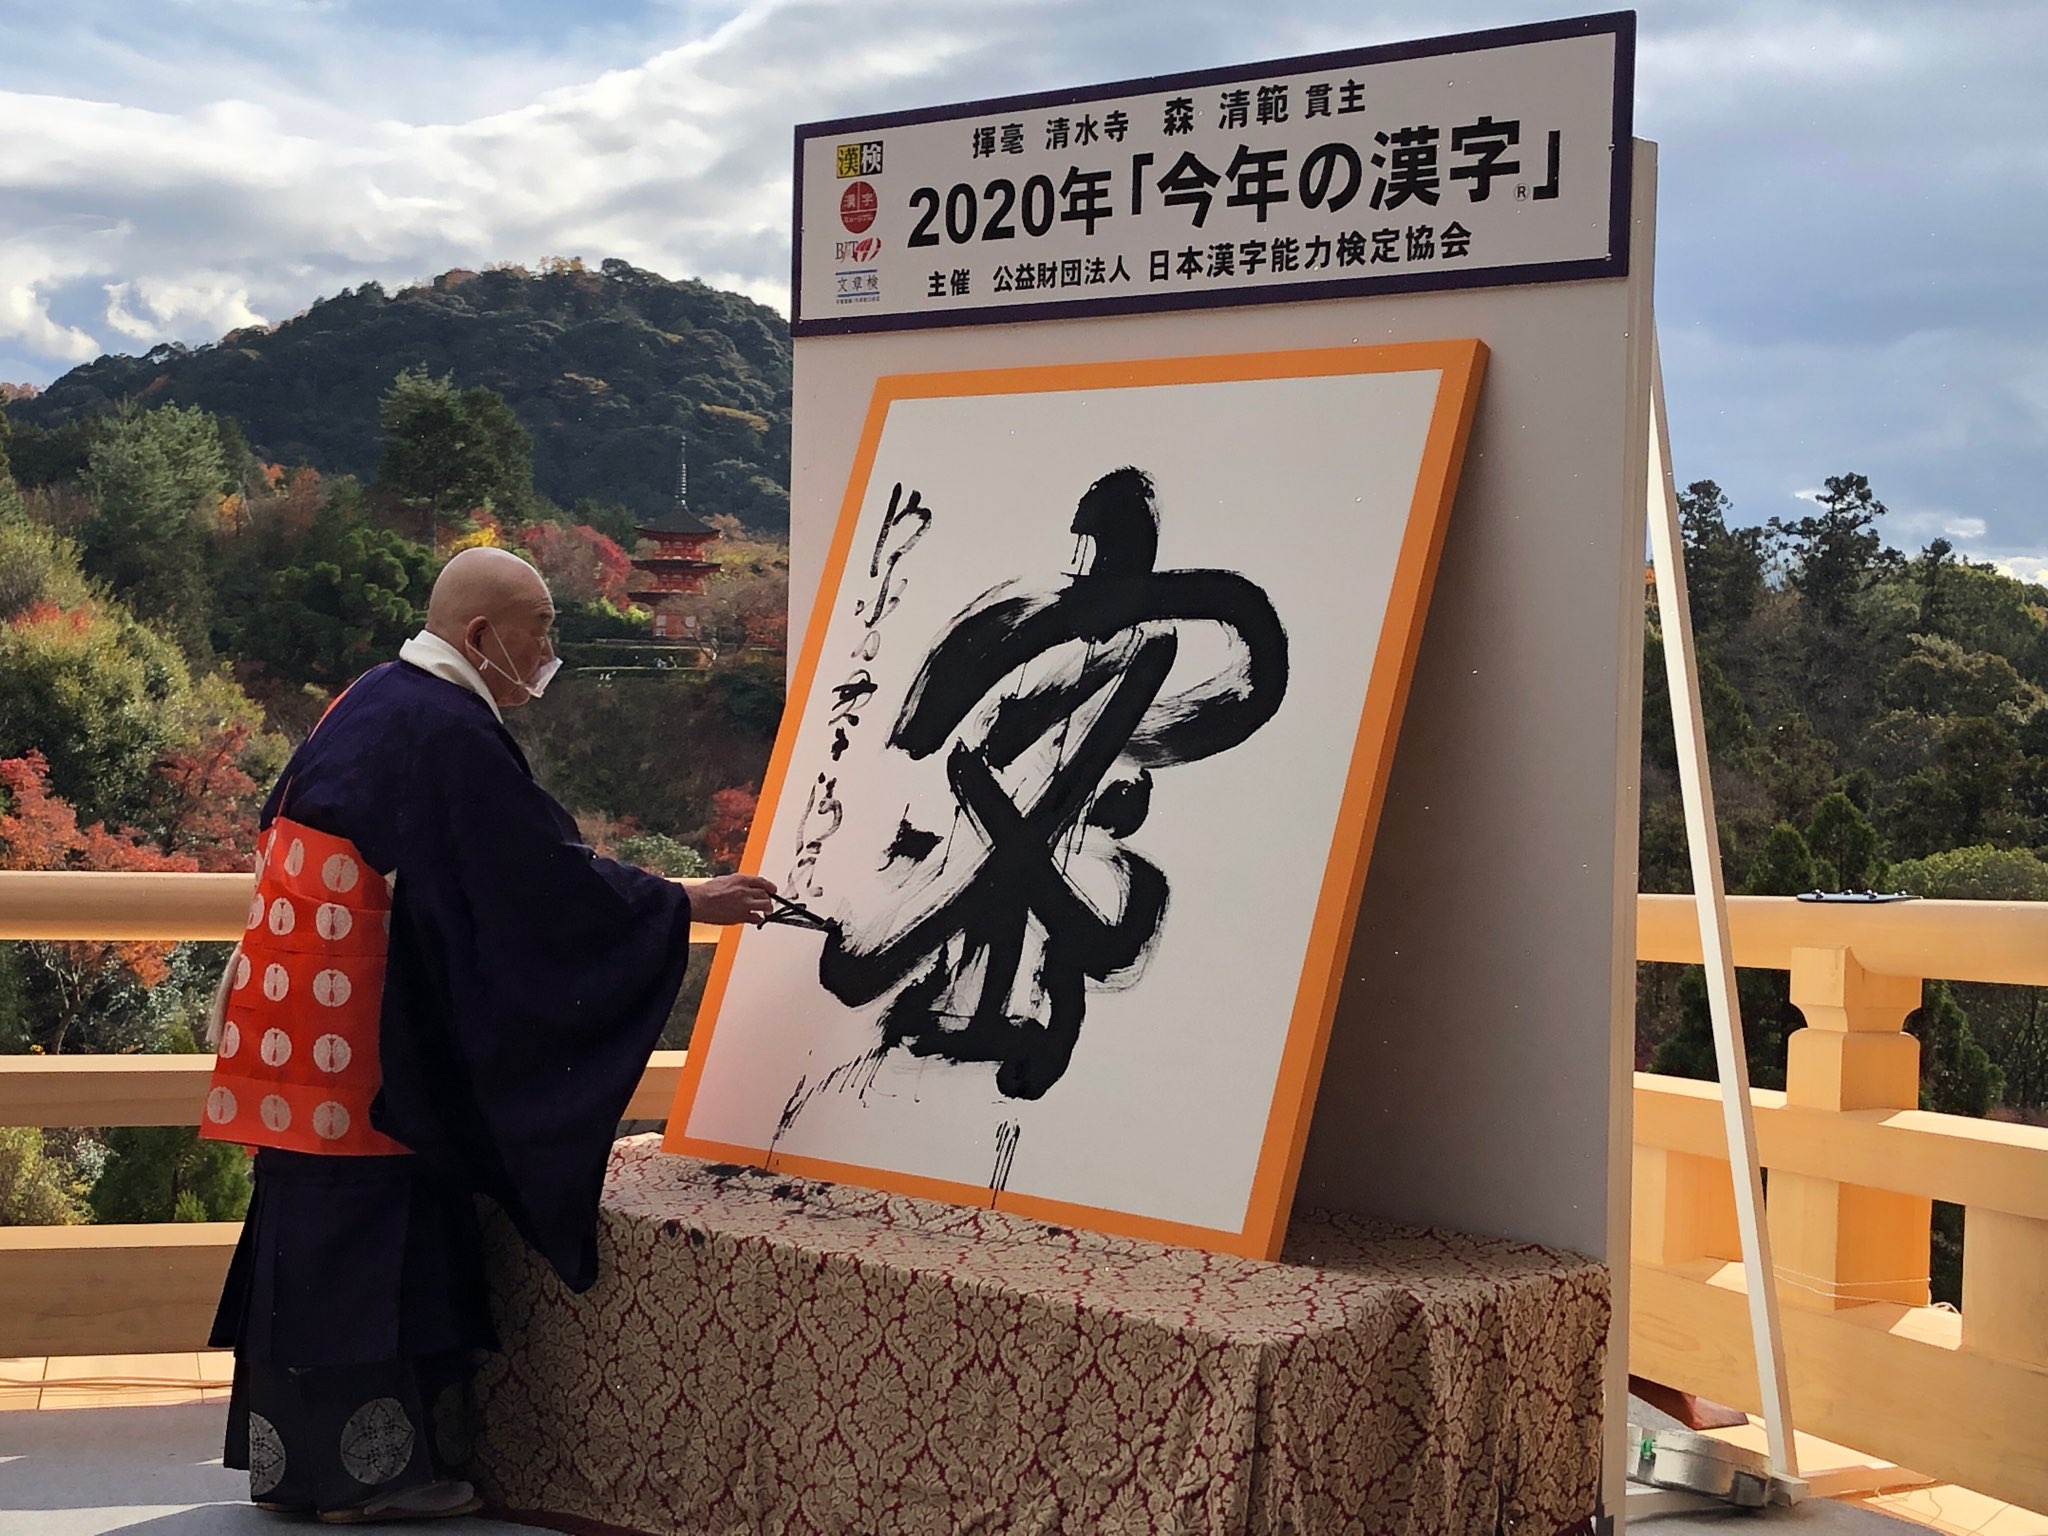 Seihan Mori, Oberster Priester des Kiyomizudera in Kyoto, präsentiert das Kanji des Jahres 2020.